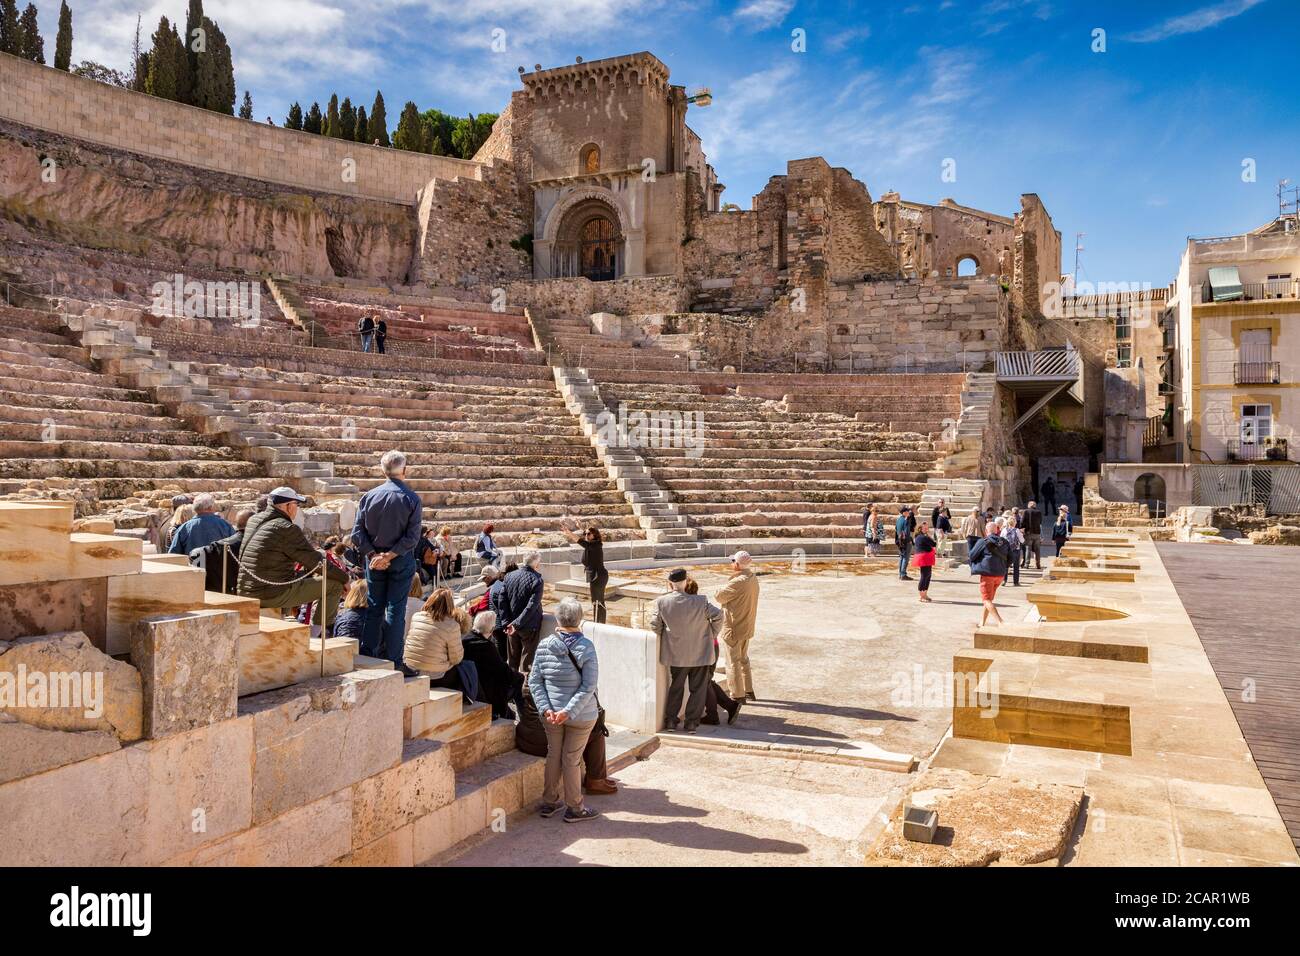 7 marzo 2020: Cartagena, Spagna - visitatori e guida nel Teatro Romano di Cartagena, parzialmente restaurato, risalente al regno di Augusto. Foto Stock